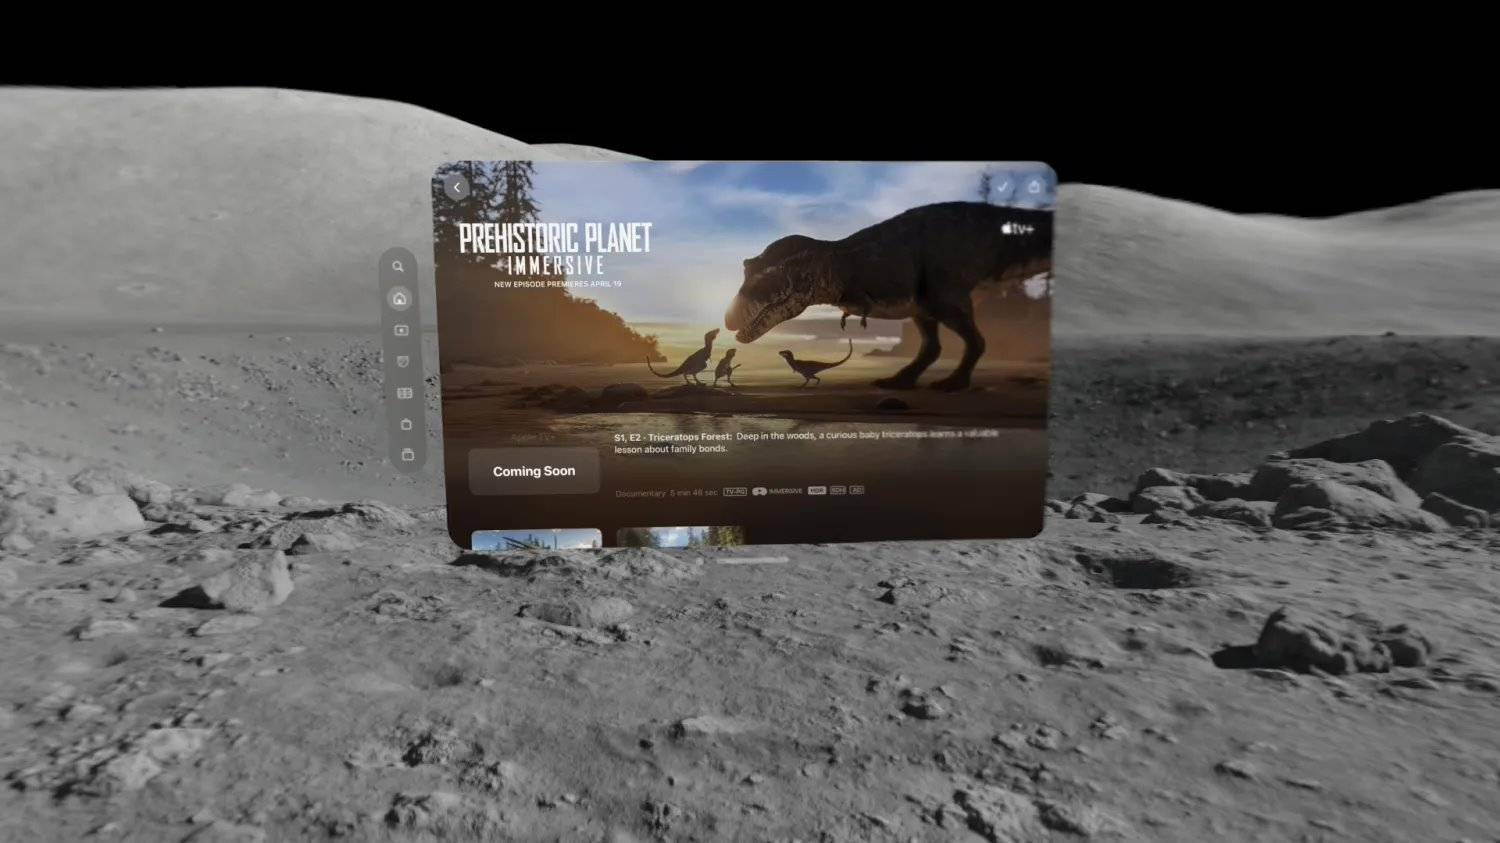 苹果 Vision Pro 头显 4 月 19 日上线《史前星球》空间视频短片